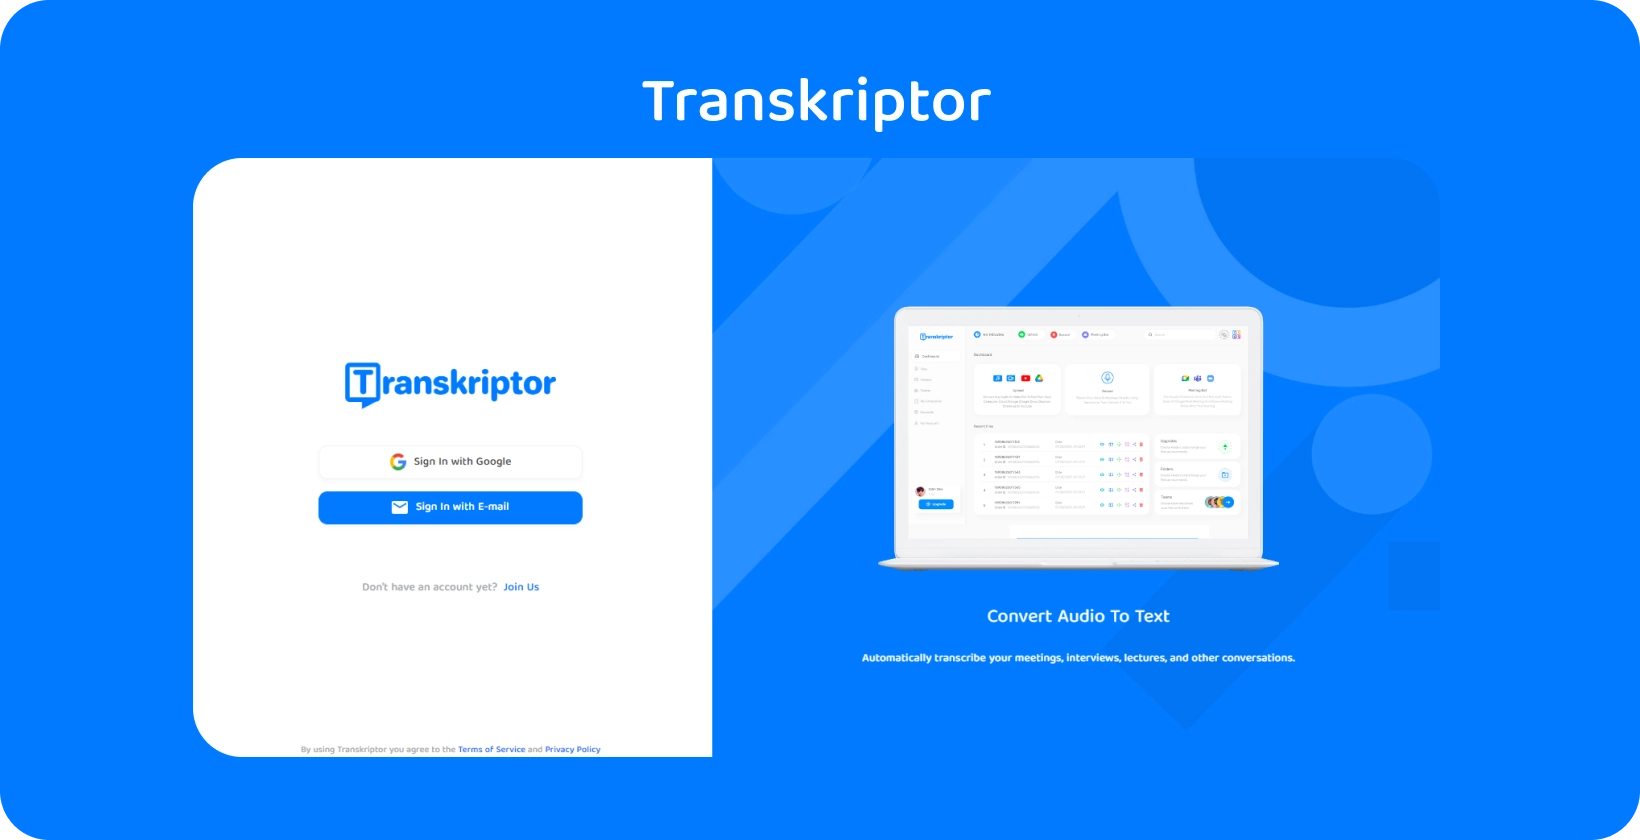 Transkriptor ऐप इंटरफ़ेस मेडिकल रिकॉर्ड अंतर्दृष्टि के लिए टेक्स्ट ट्रांसक्रिप्शन सेवाओं के लिए आसान ऑडियो दिखाता है।